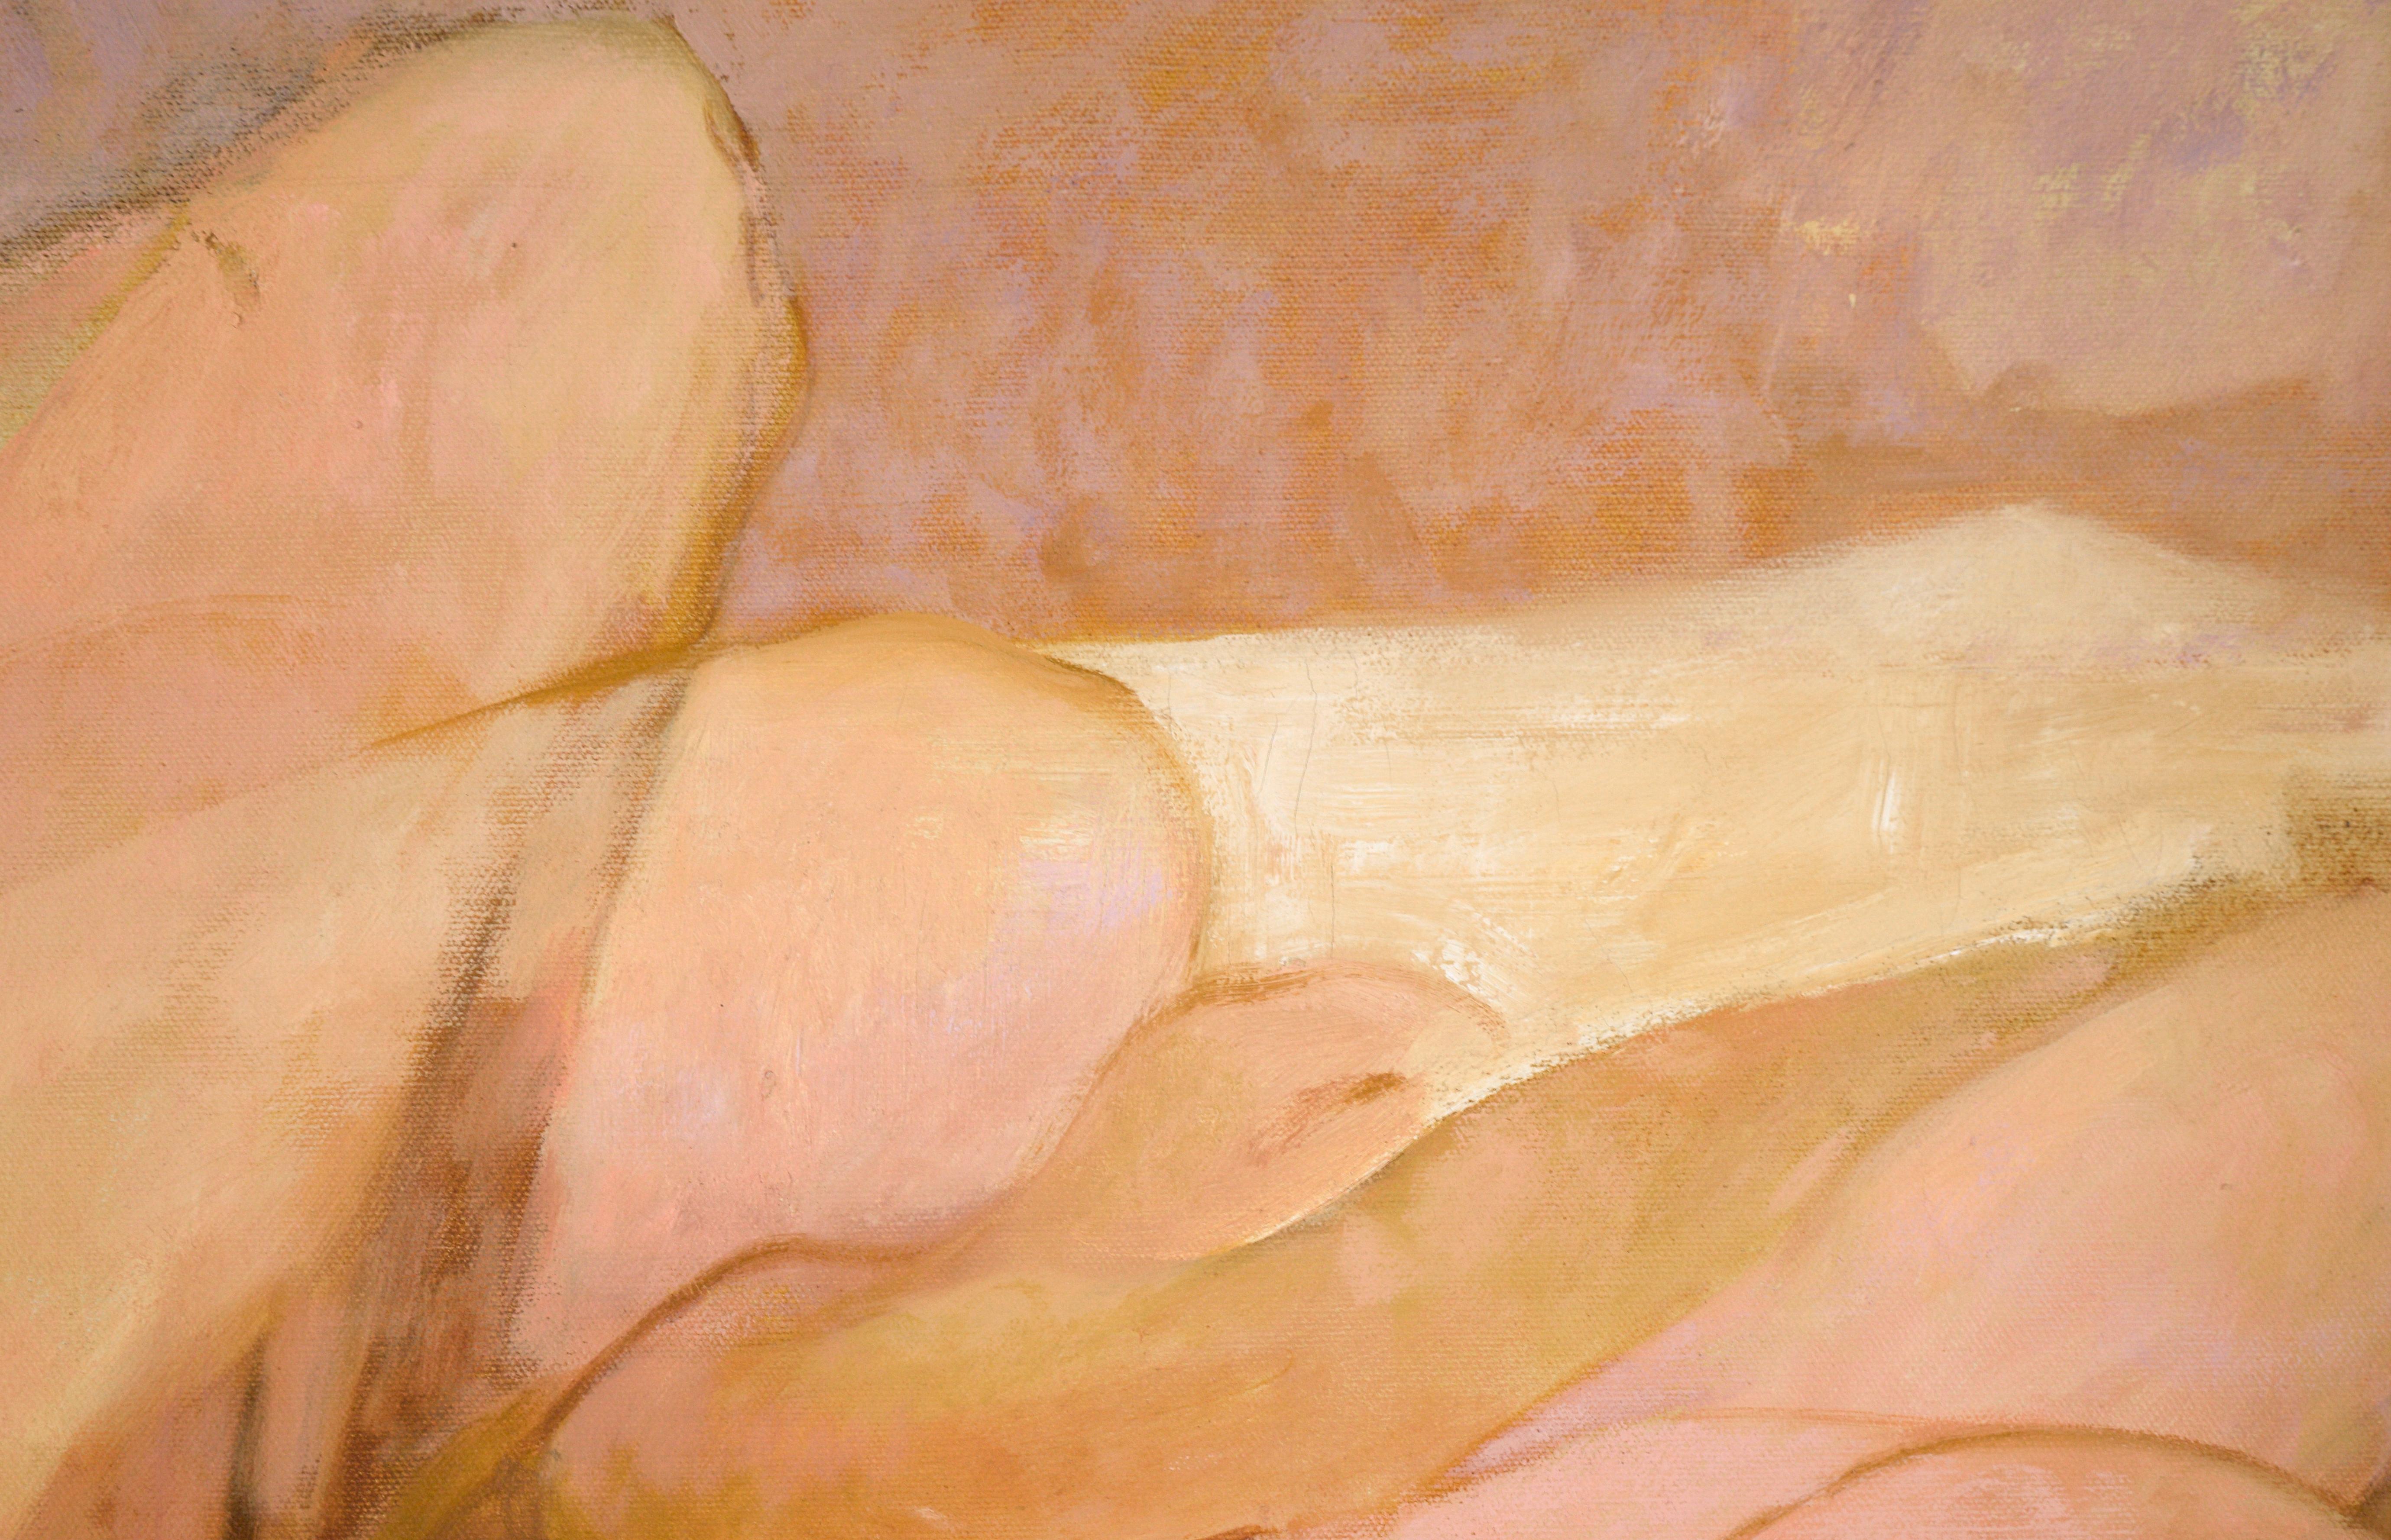 Représentation délicate et expressive d'un couple nu par Byron Richard Rodarmel (américain, 1932-2007). Un couple est enlacé sur un lit, dans une douce palette de pêche, de jaune, de rose et de beige. Variously, leurs jambes sont représentées dans